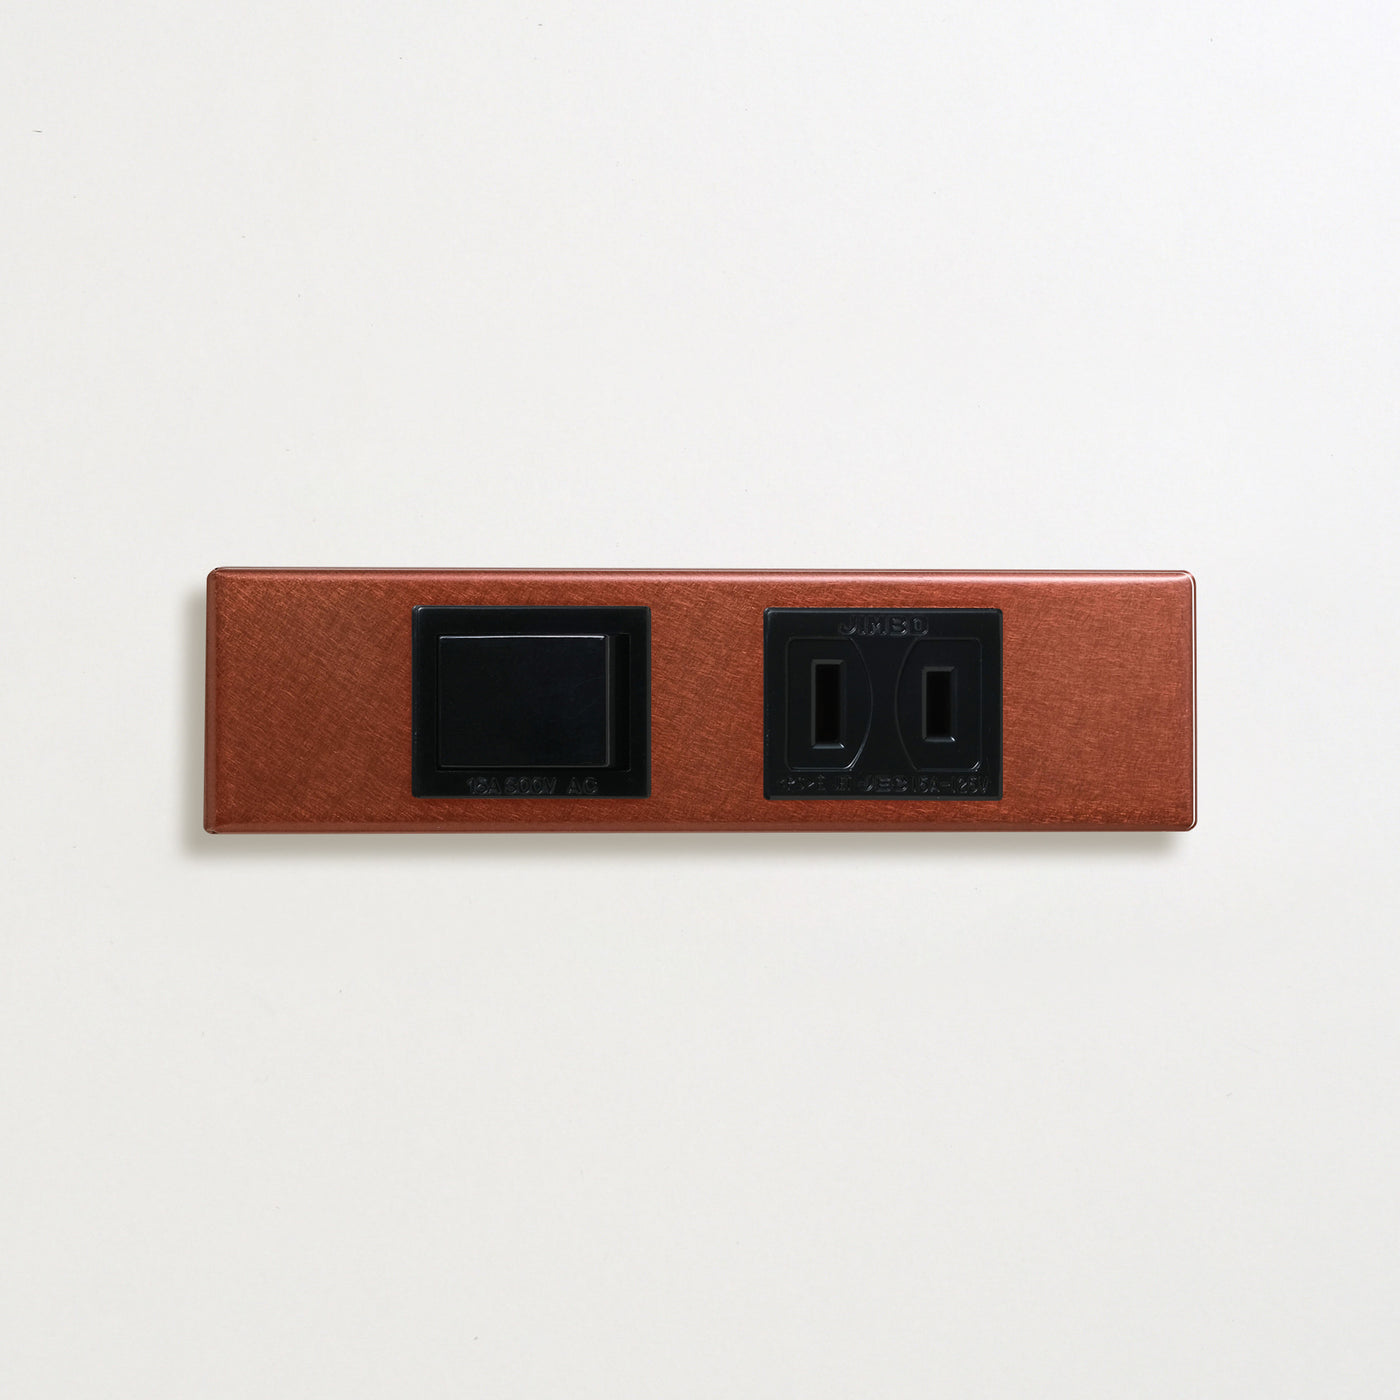 銅色（磨き） 家具用プレート<br>+ パナソニック 埋込スイッチ シングル ブラック <br>+ NK 埋込コンセント ブラック